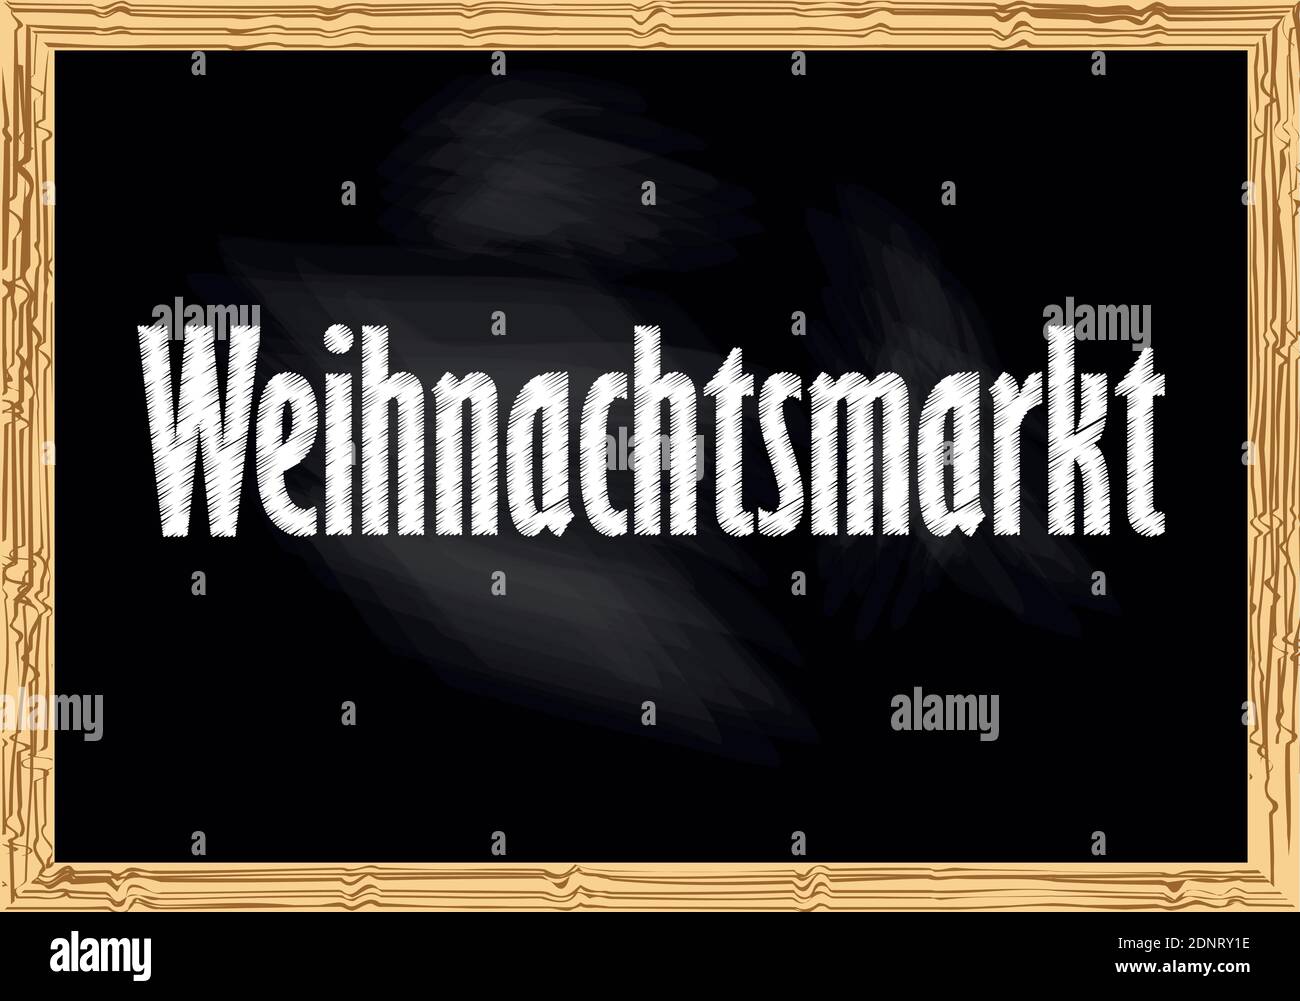 Weihnachtsmarkt - Fiera di Natale in tedesco blackboard avviso illustrazione vettoriale per la progettazione Illustrazione Vettoriale